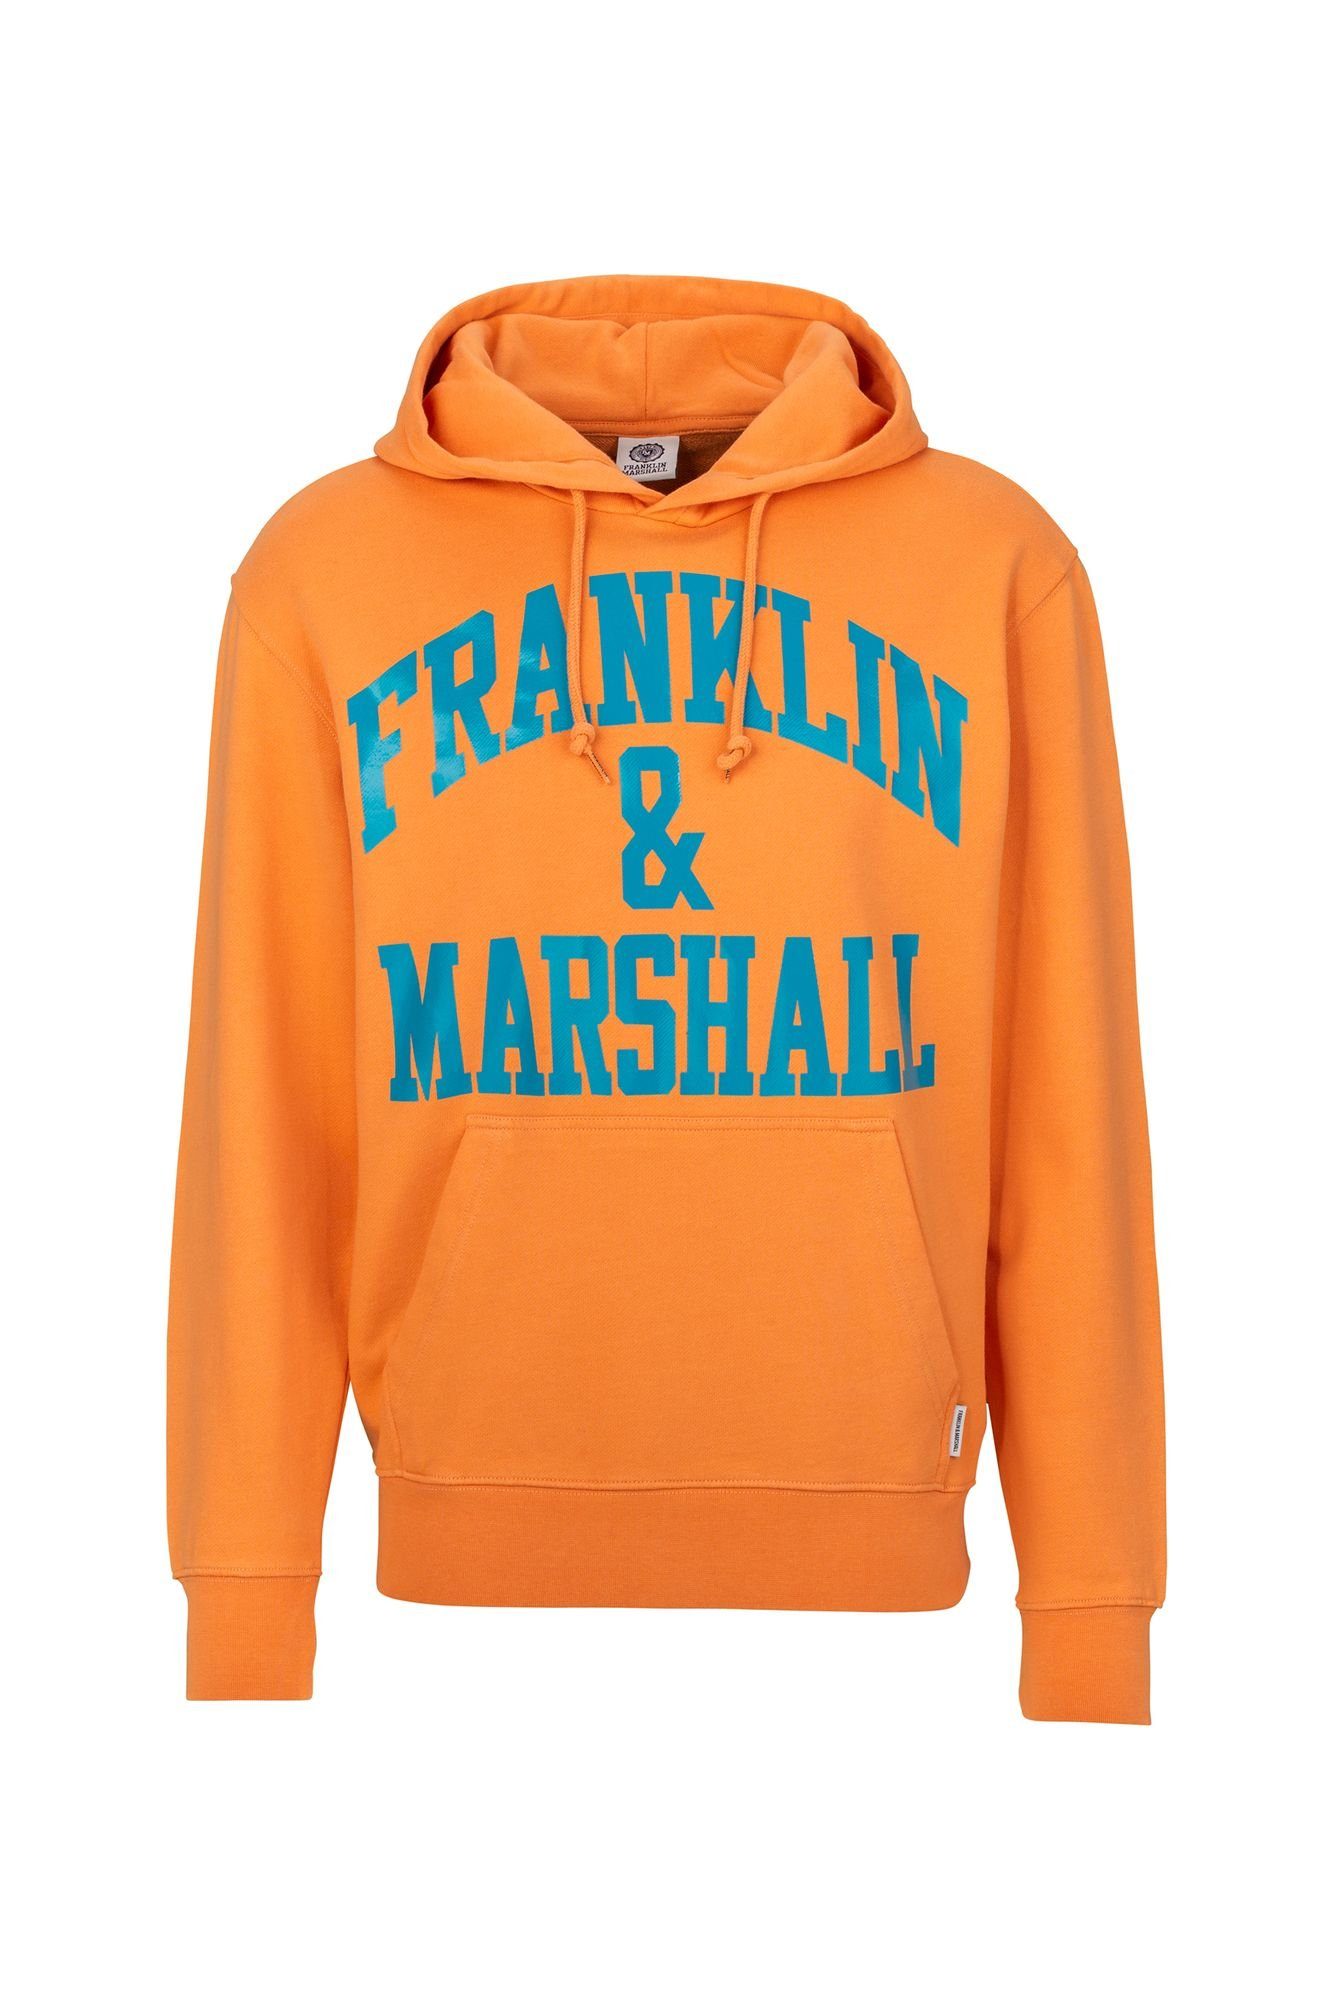 Franklin & Marshall Sweatshirt Oversized Kapuzenpullover mit überschnittenen Schultern